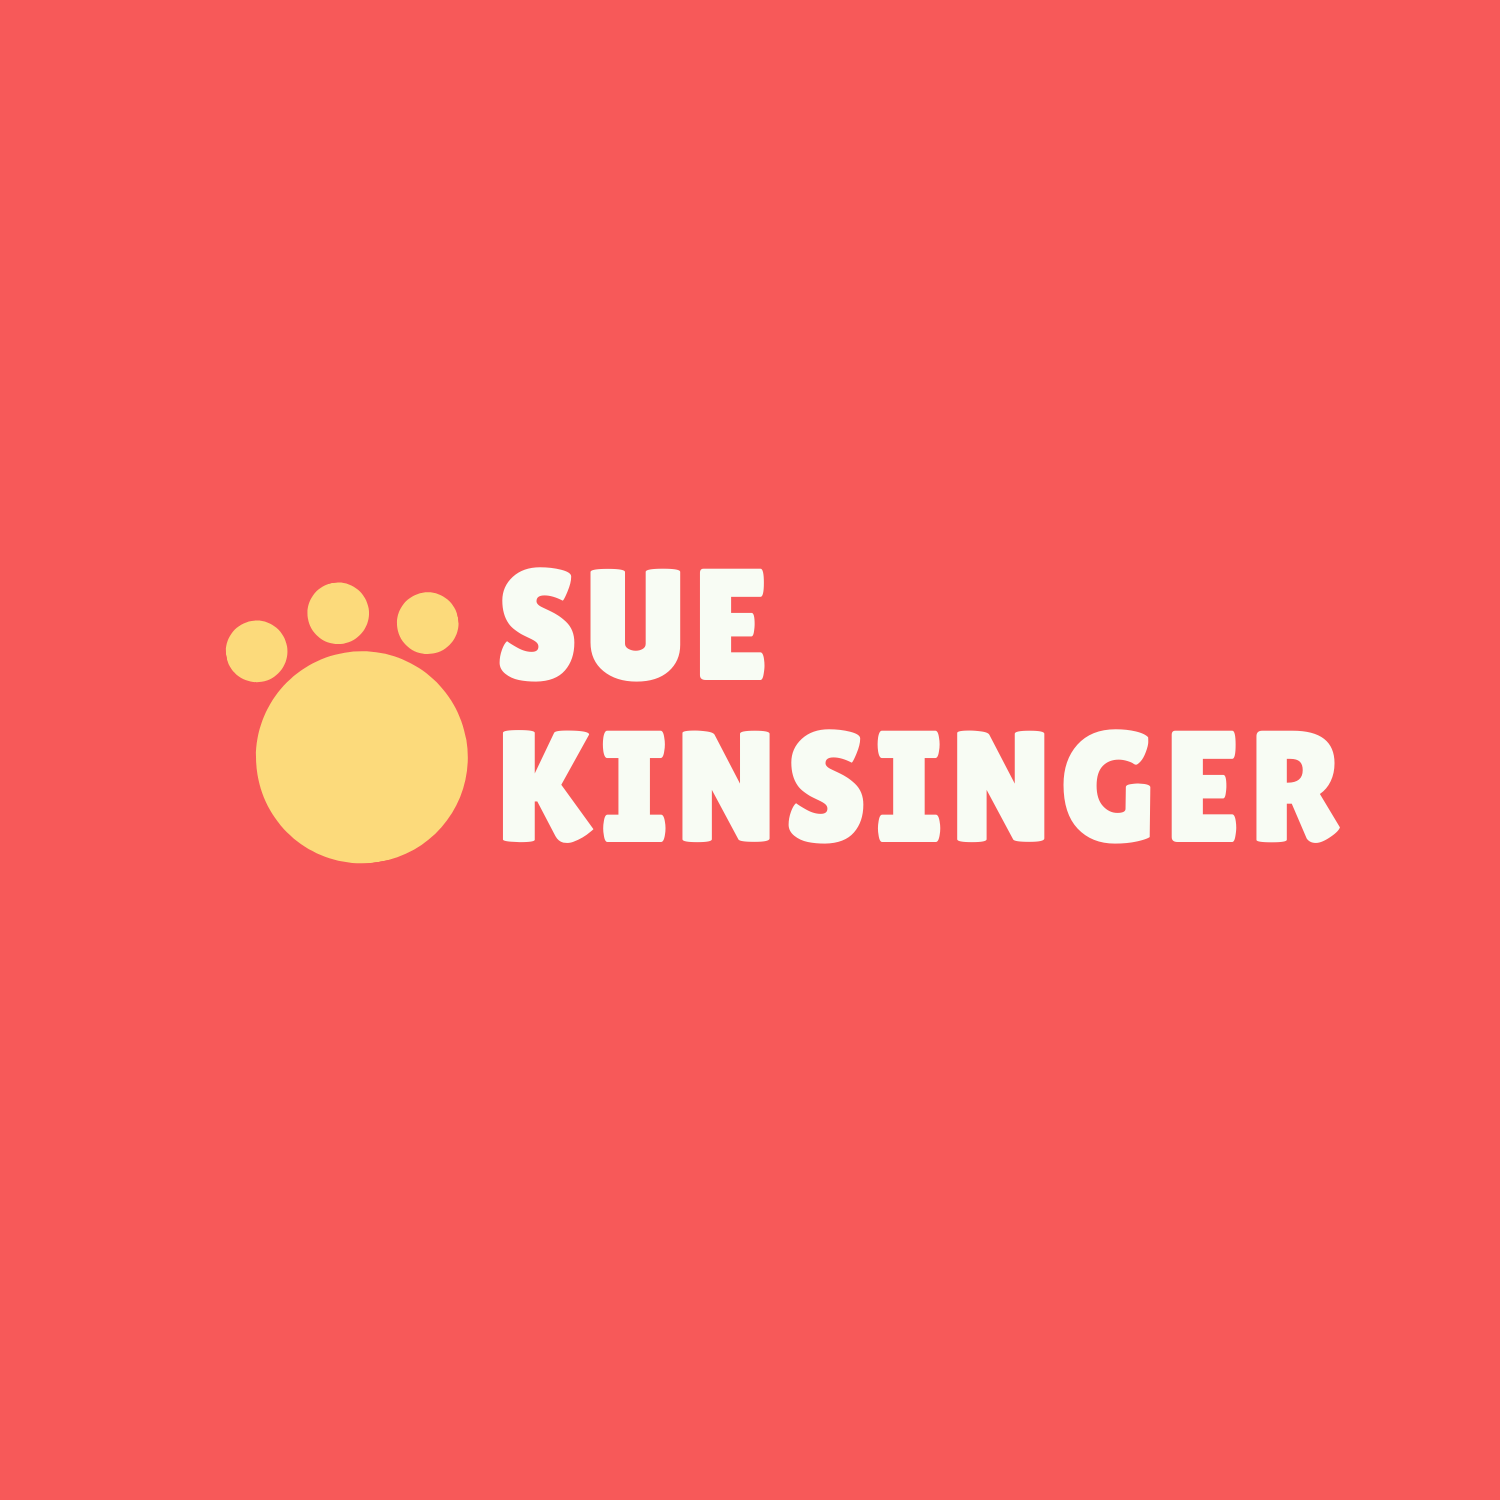 Sue Kinsinger